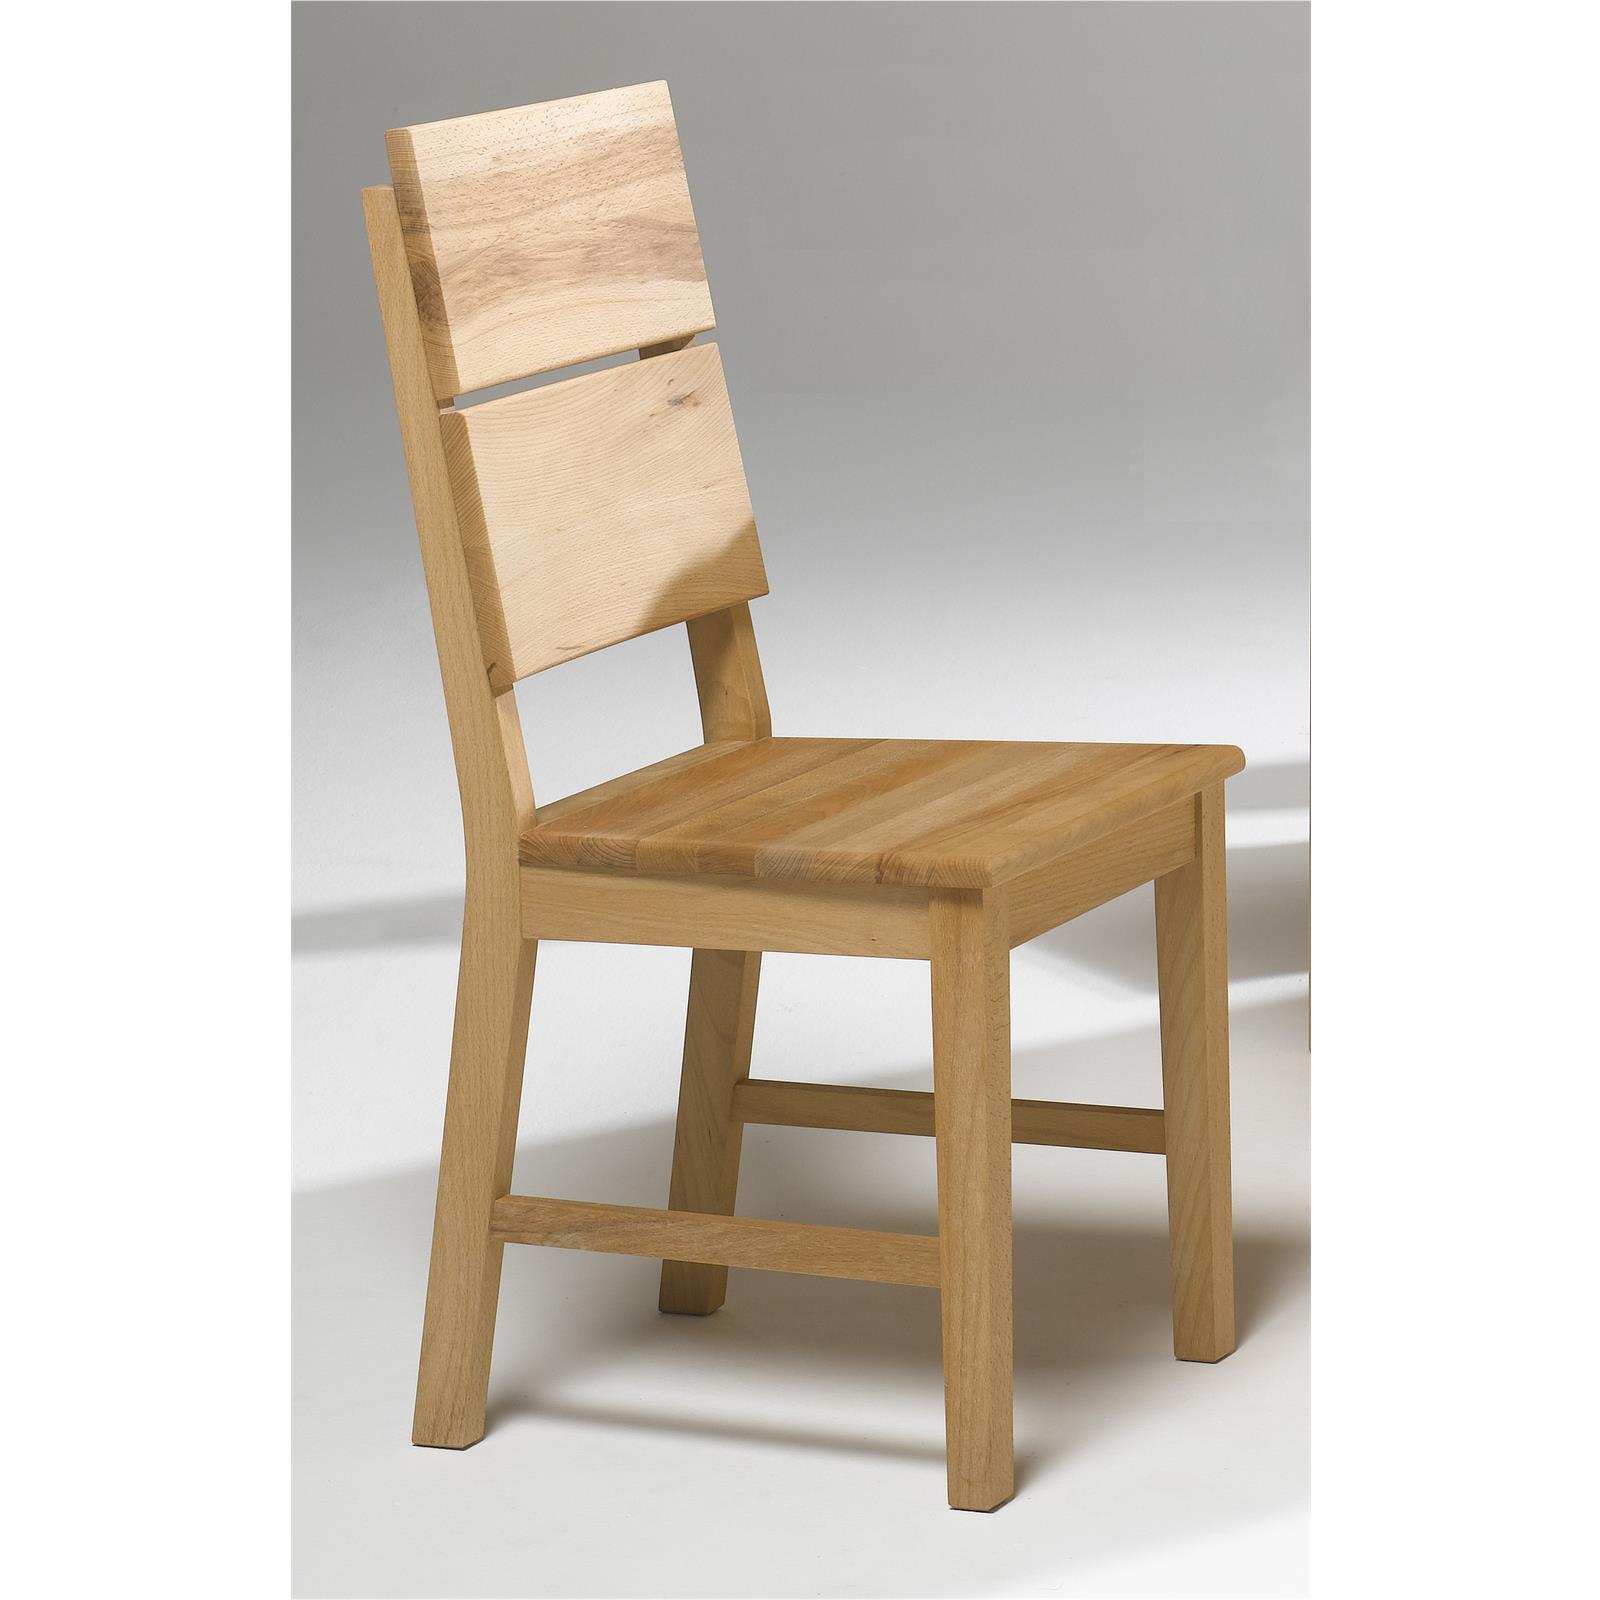 2 Esszimmer Stühle aus Massiv Holz Wildeiche Landhaus Möbel 2er Set | eBay